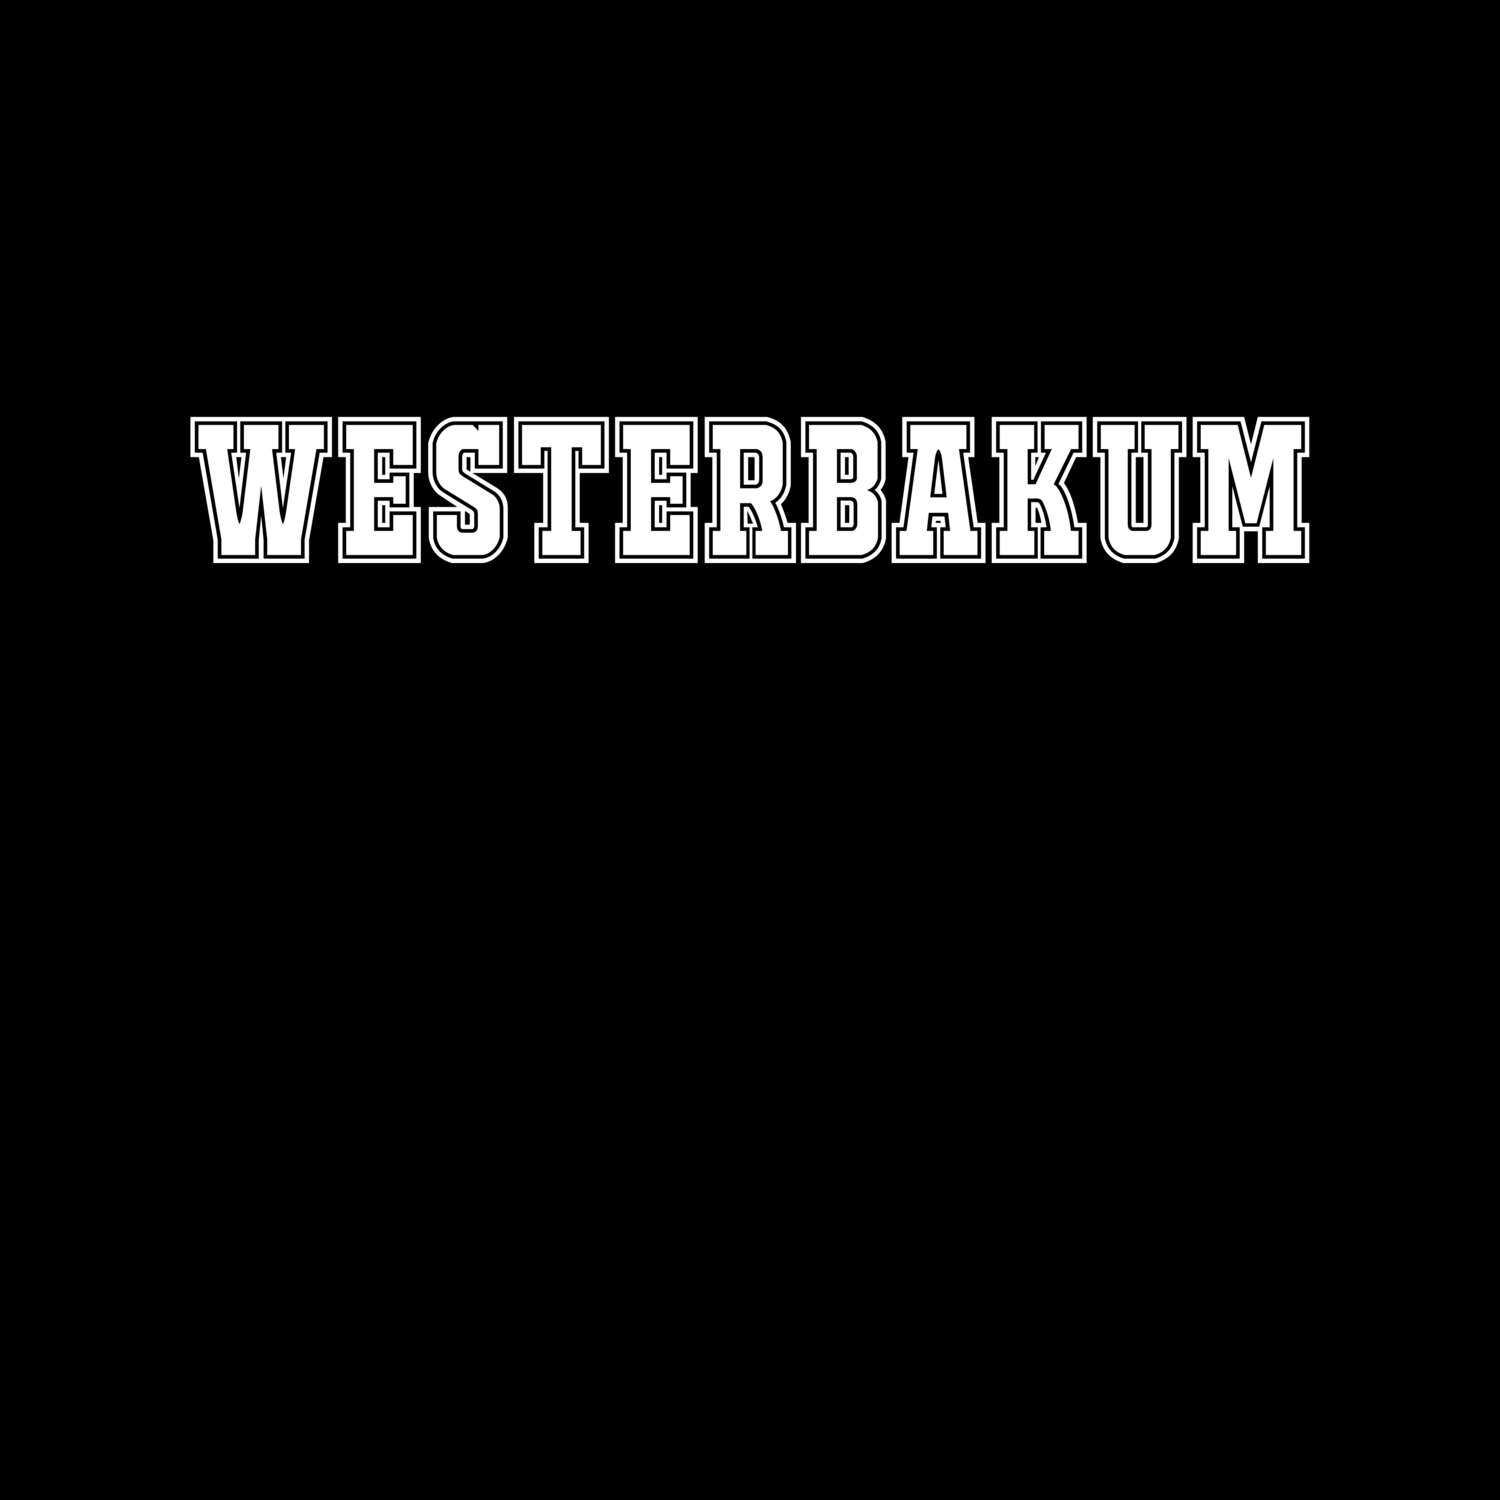 Westerbakum T-Shirt »Classic«